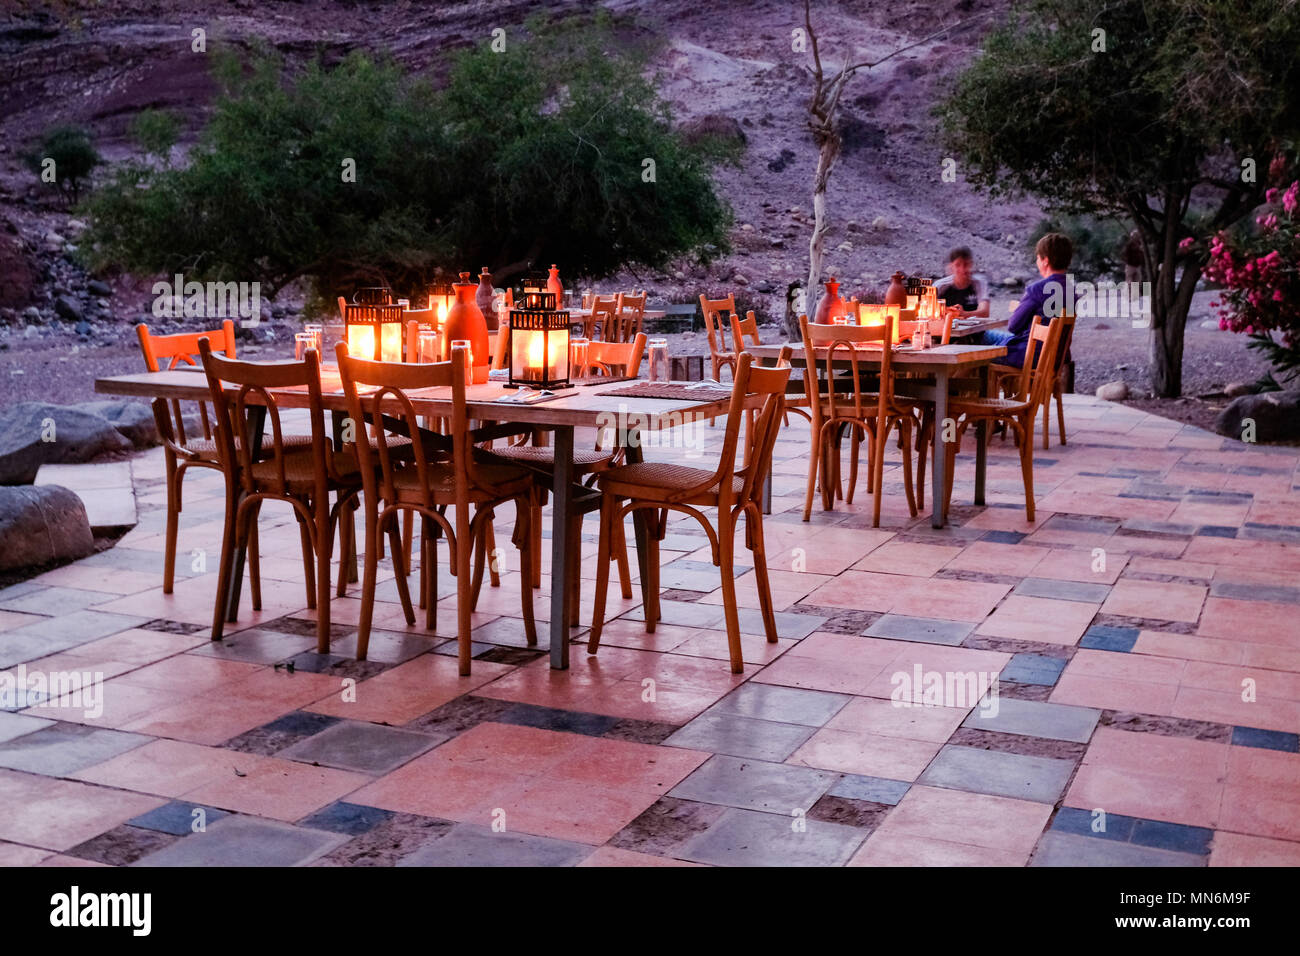 Zona de estar exterior del restaurante iluminado por velas en un paisaje seco Foto de stock